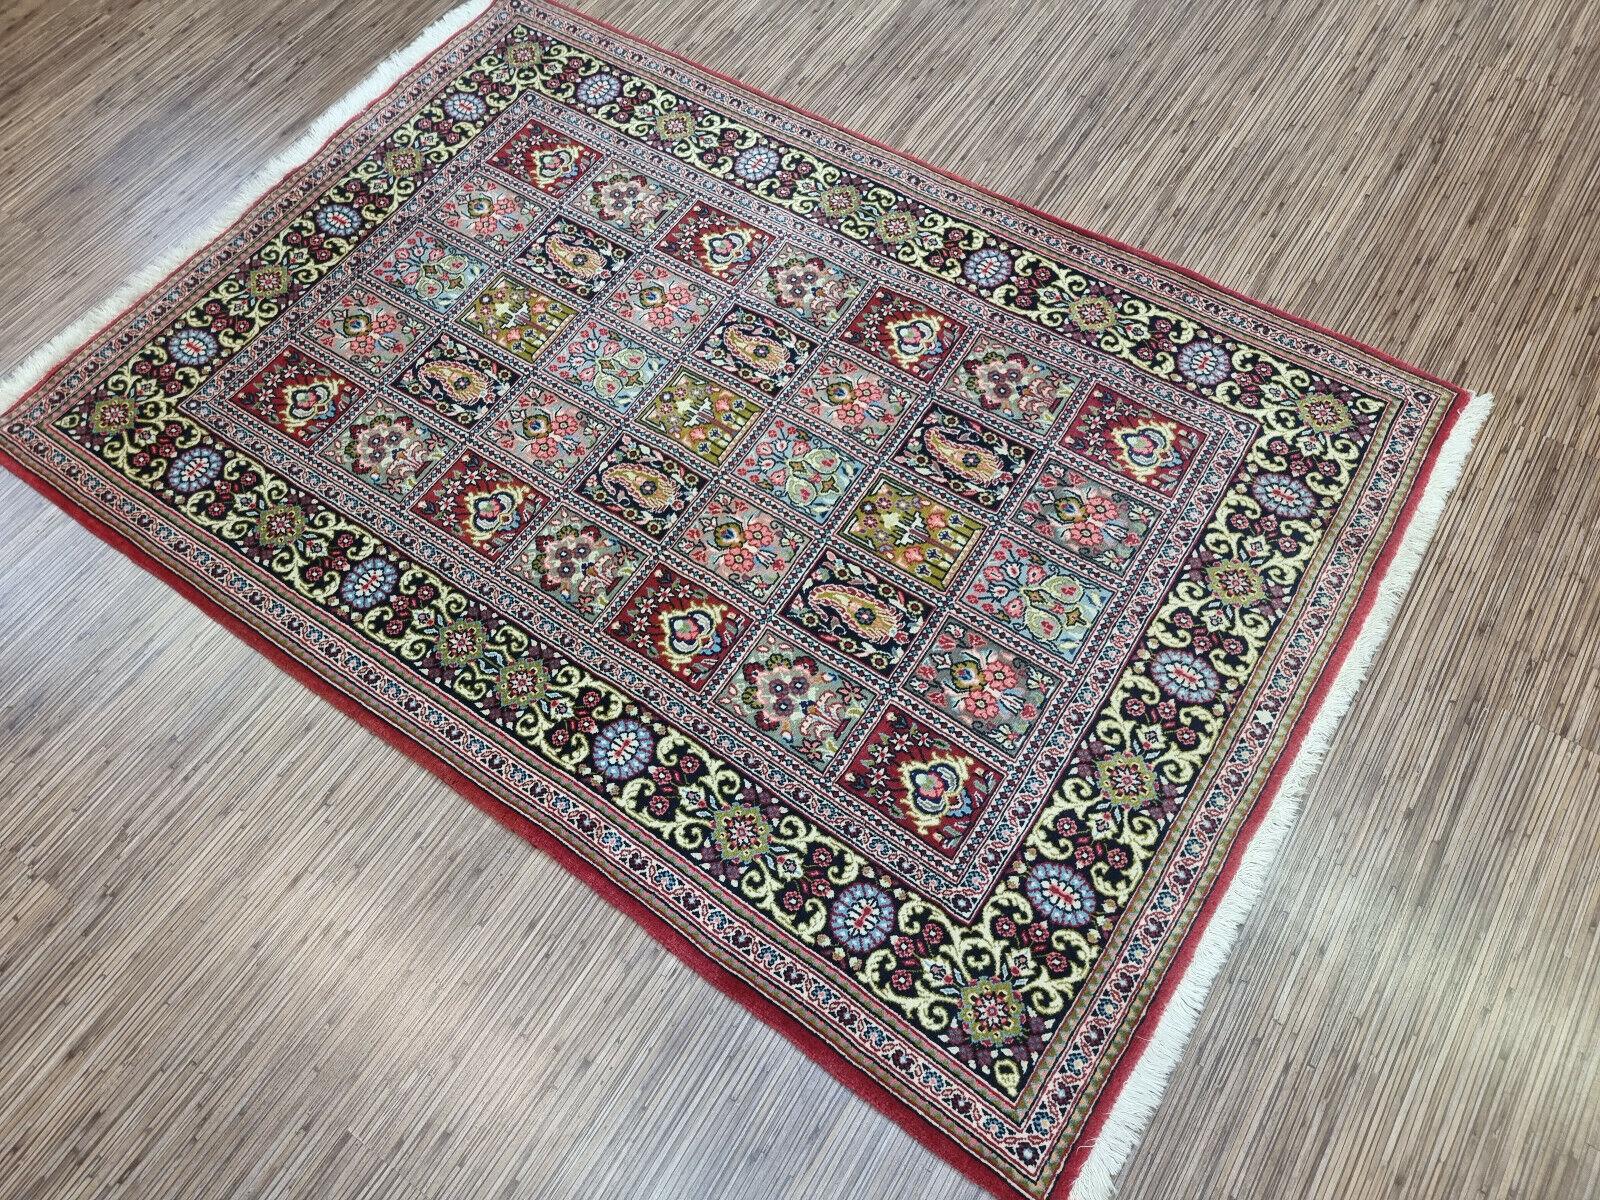 Handgefertigter Vintage Persian Style Qum Teppich 3.6' x 5.1', 1970er, guter Zustand, Wolle

Verschönern Sie Ihren Raum mit diesem handgefertigten Qum-Teppich im persischen Vintage-Stil. Dieser wunderschöne Teppich wurde in den 1970er Jahren